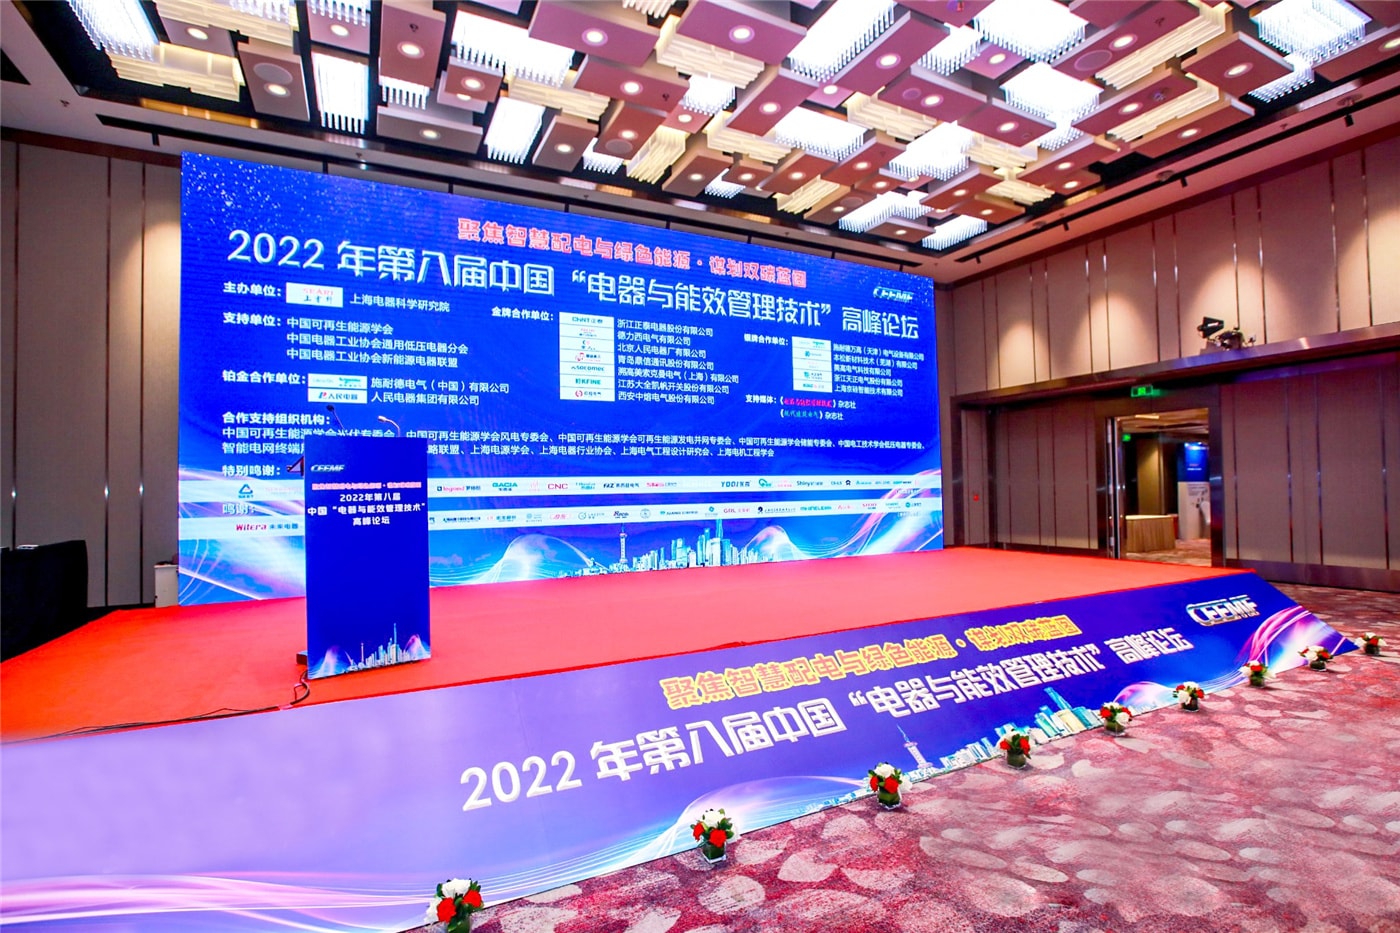 Benlong Automation diundang untuk berpartisipasi dalam KTT “Teknologi Manajemen Peralatan dan Efisiensi Energi” Tiongkok ke-8 tahun 2022